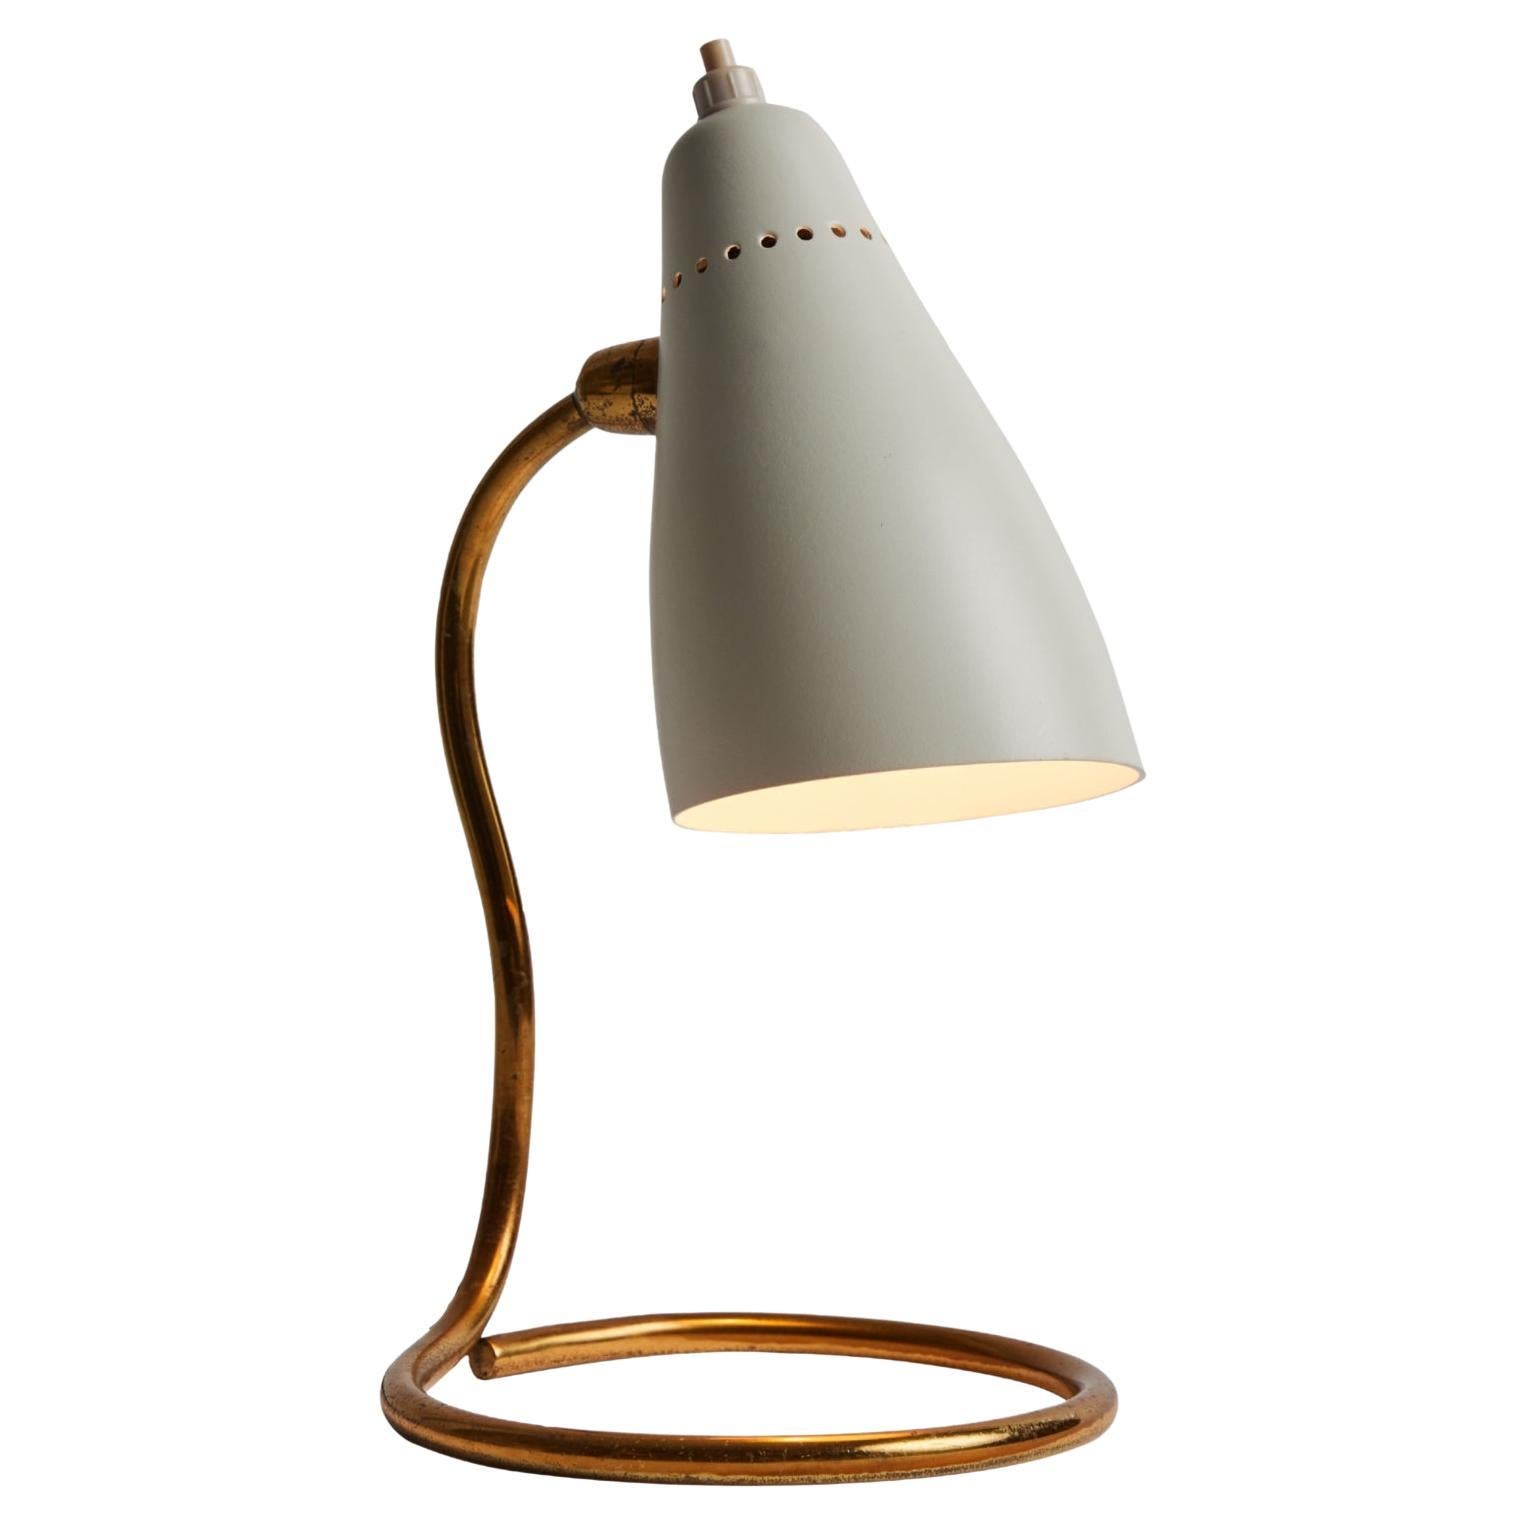 Lampe de table 'Vipere' de Giuseppe Ostuni des années 1950 pour O-Luce. Une lampe de table extrêmement rare et étonnamment utilitaire exécutée en aluminium peint en blanc et en laiton par l'un des designers italiens les plus raffinés du milieu du